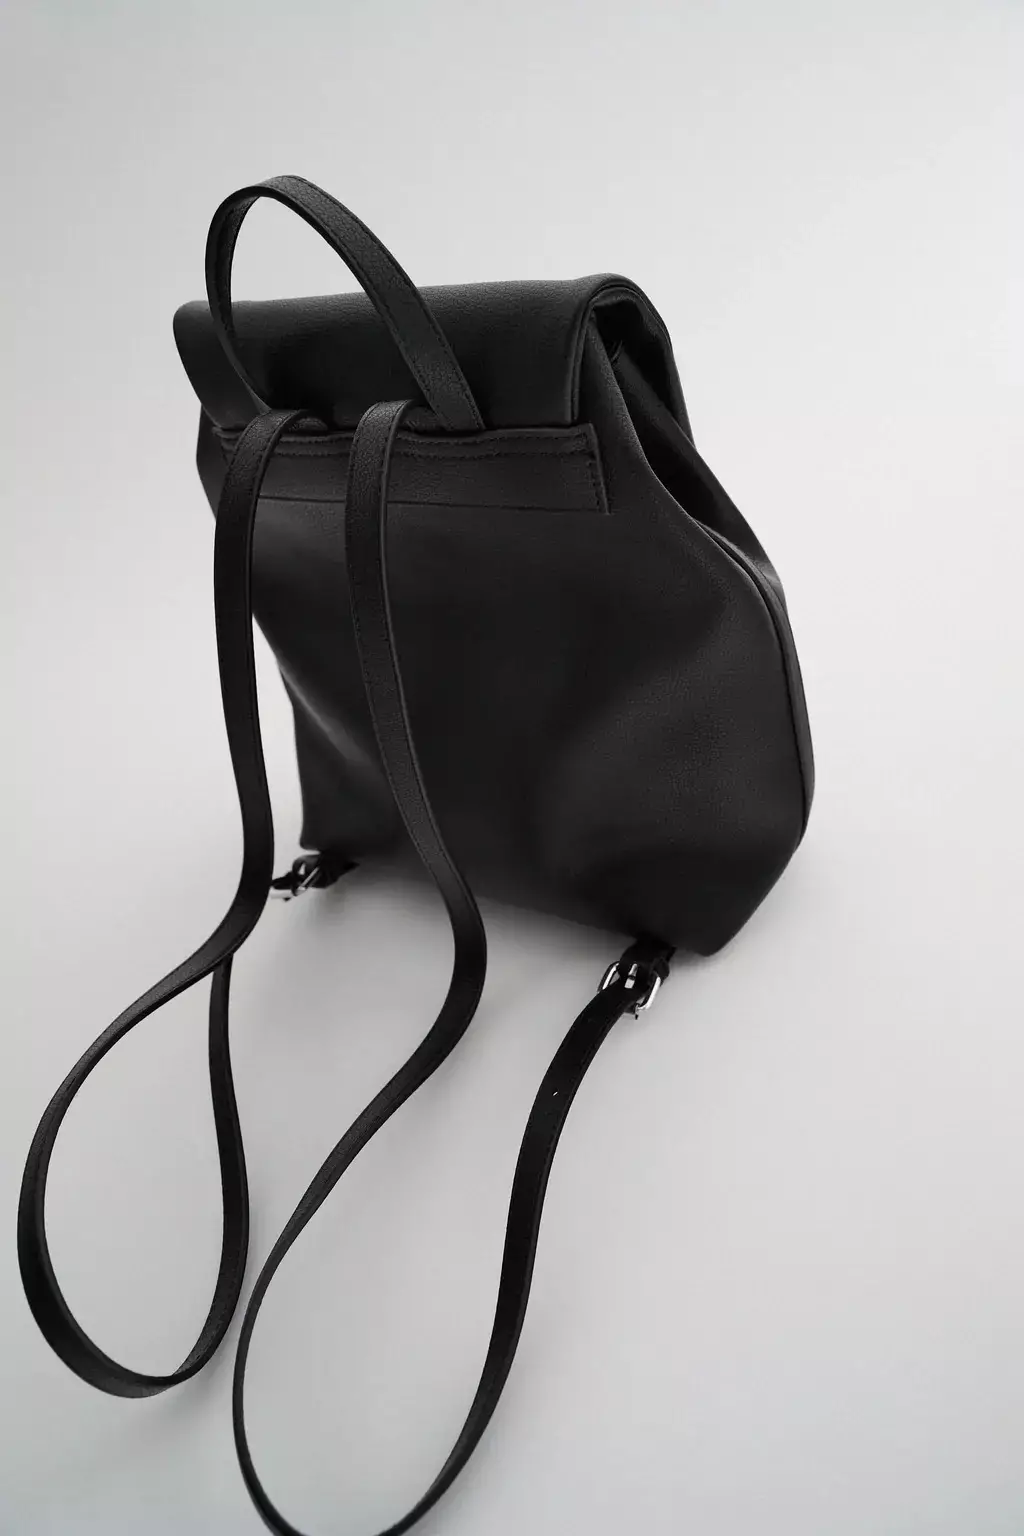 Zara backpacks: ຜູ້ຍິງສີດໍາ, ເດັກນ້ອຍສໍາລັບເດັກນ້ອຍ, ສີຂີ້ເຖົ່າແລະສີແດງ, ພ້ອມທັງແບບກະເປົາຂອງກະເປົາຈາກບໍລິສັດ. ສິ່ງທີ່ດີທີ່ສຸດທີ່ຈະໃສ່? 15437_31